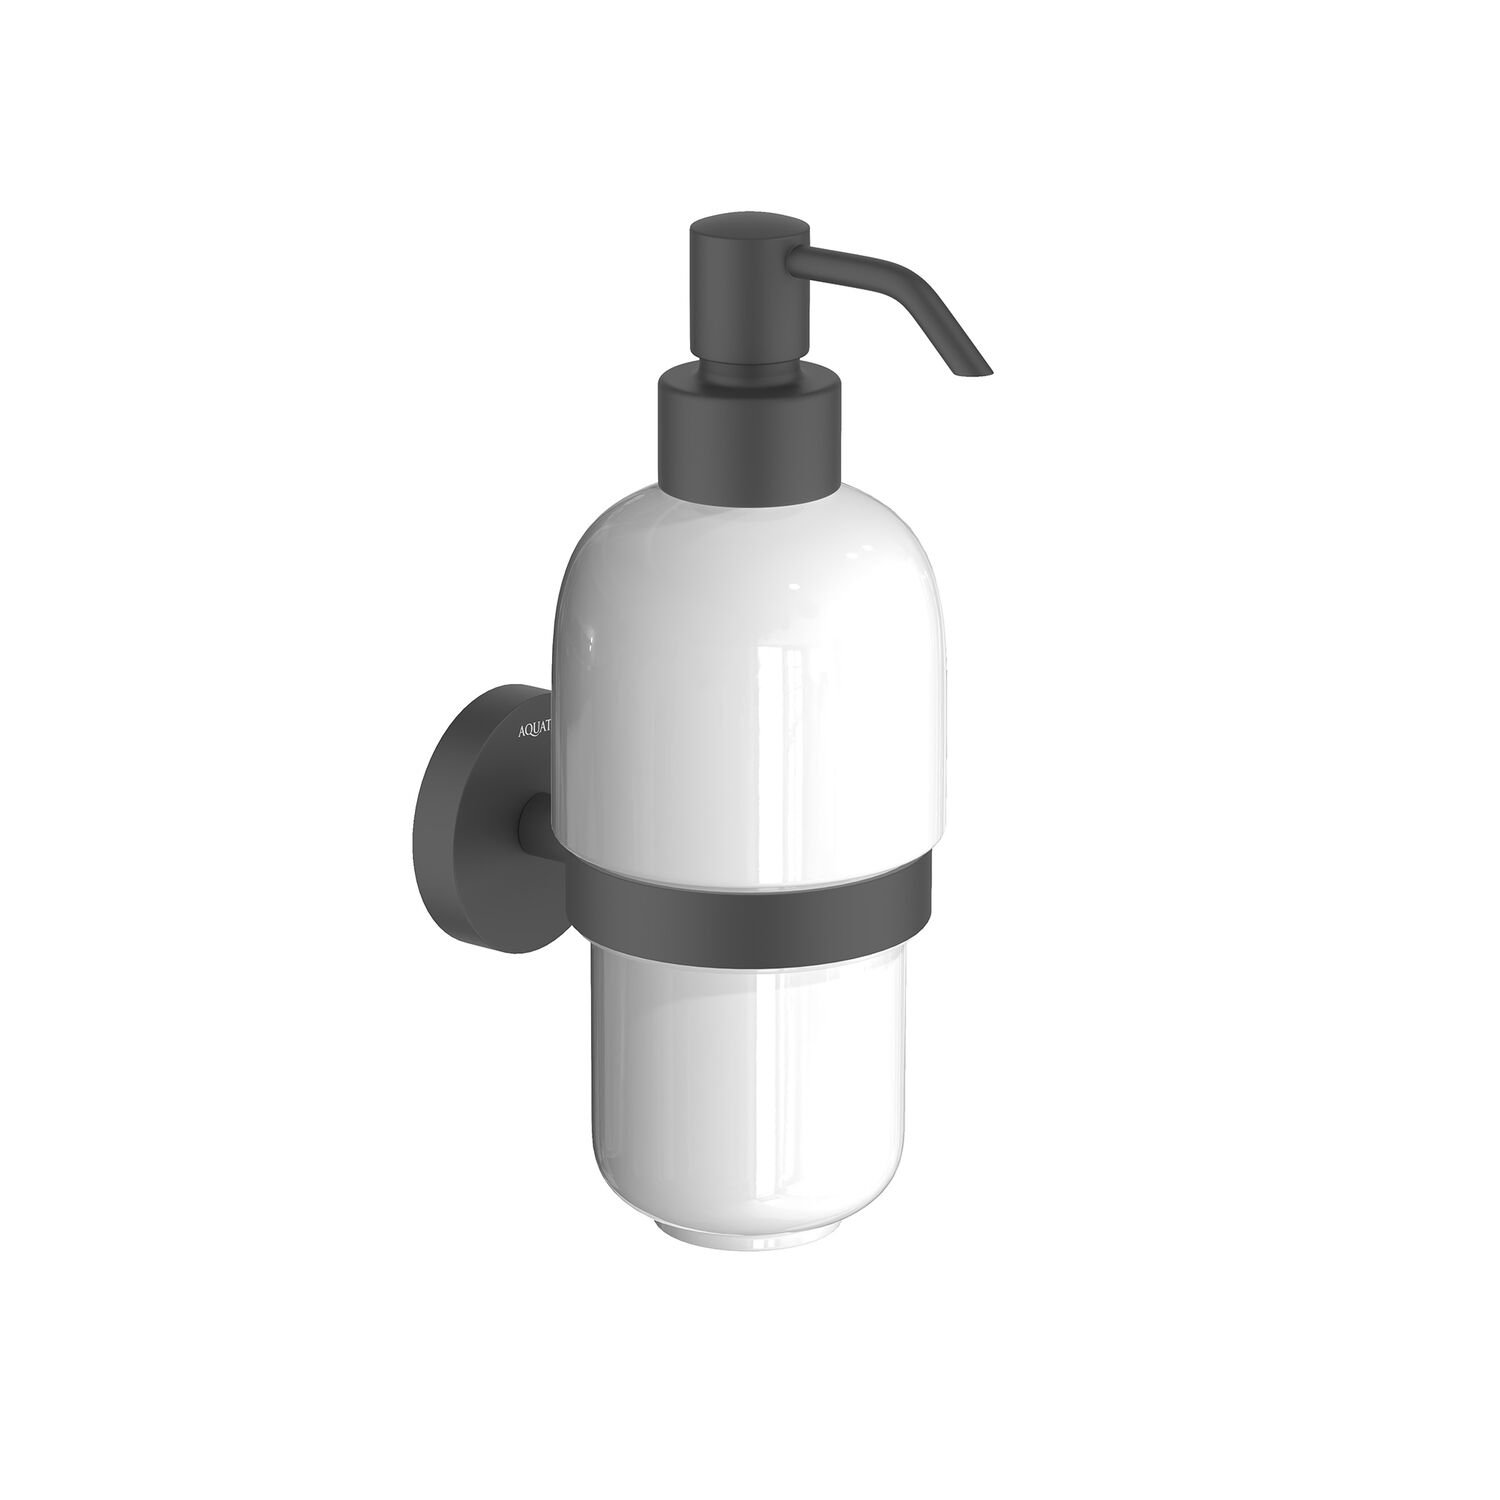 Дозатор Акватек Бетта AQ4605MB для жидкого мыла, подвесной, цвет матовый черный